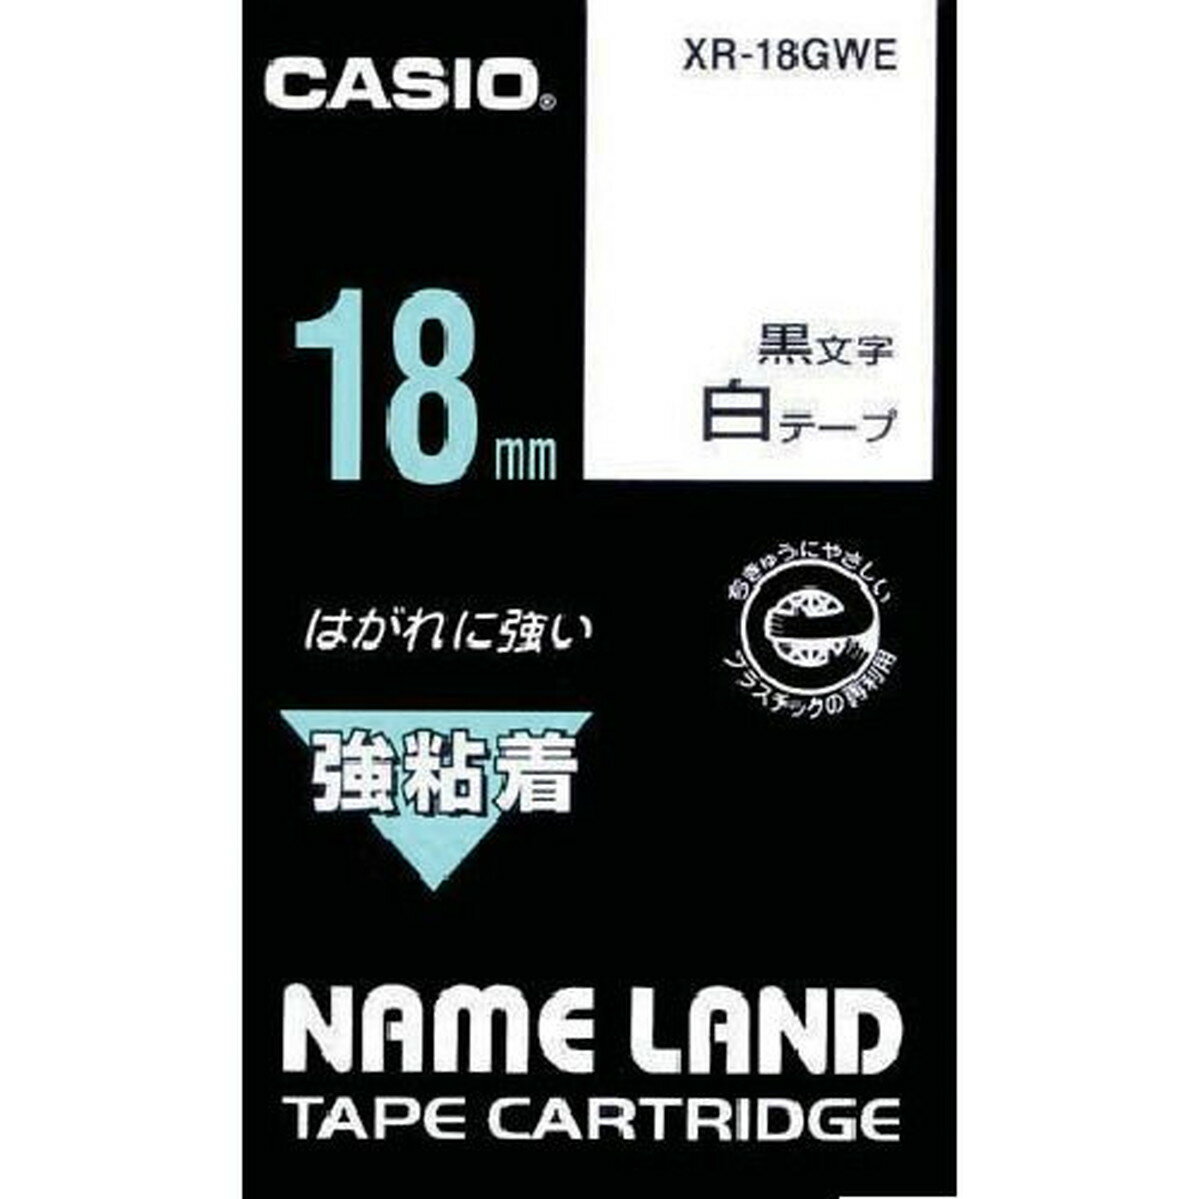 カシオ ネームランド用強粘着テープ18mm 1個 (XR-18GWE)